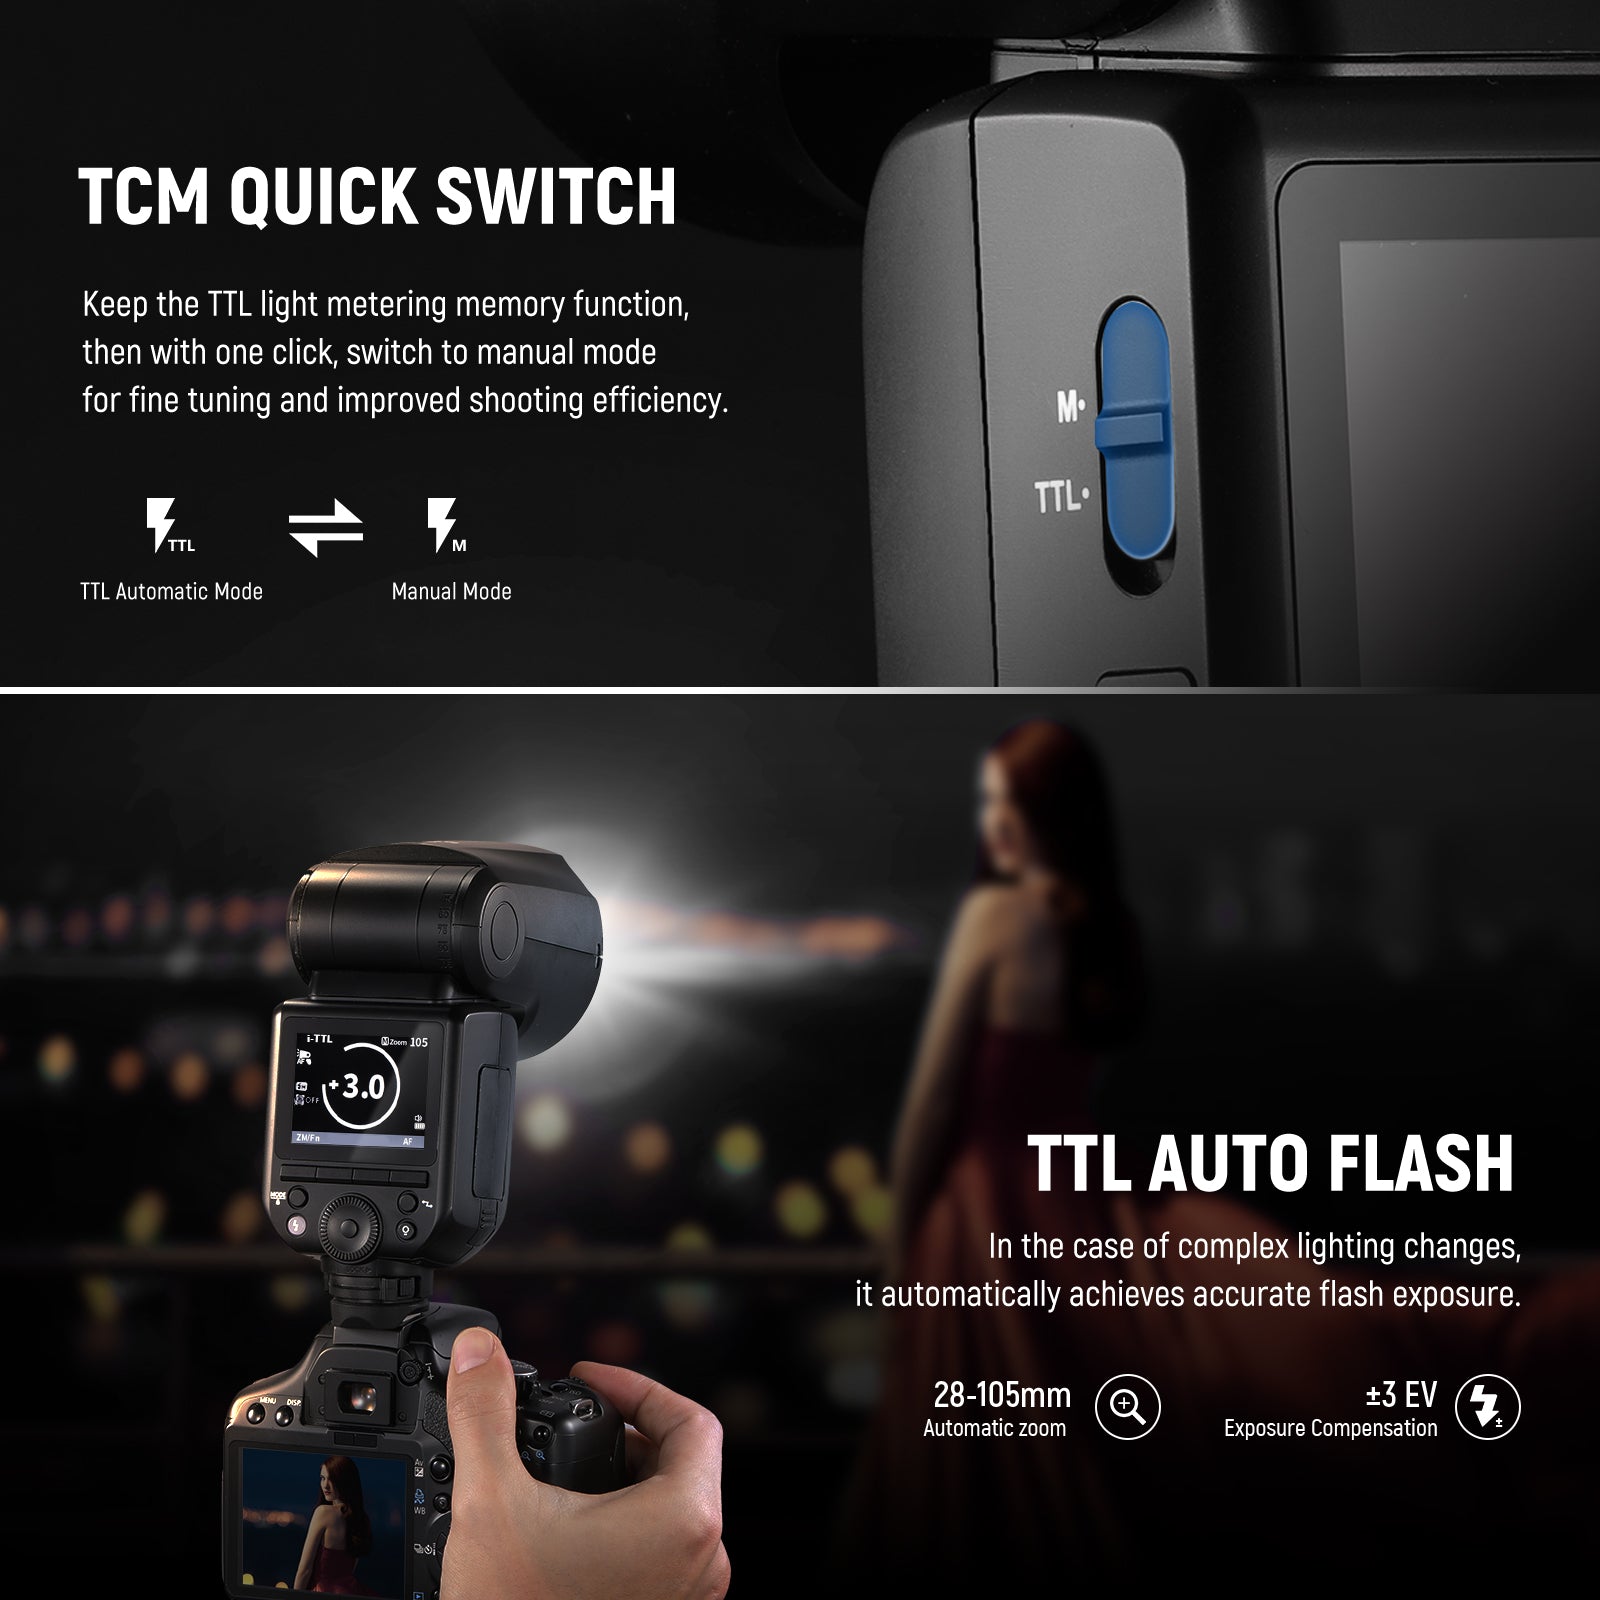 NEEWER Z1-S TTL Round Head Flash Speedlite for Sony DSLR Cameras, 76Ws 2.4G  1/8000s HSS Speedlight, 10 Levels LED Modeling Lamp, 2600mAh Lithium